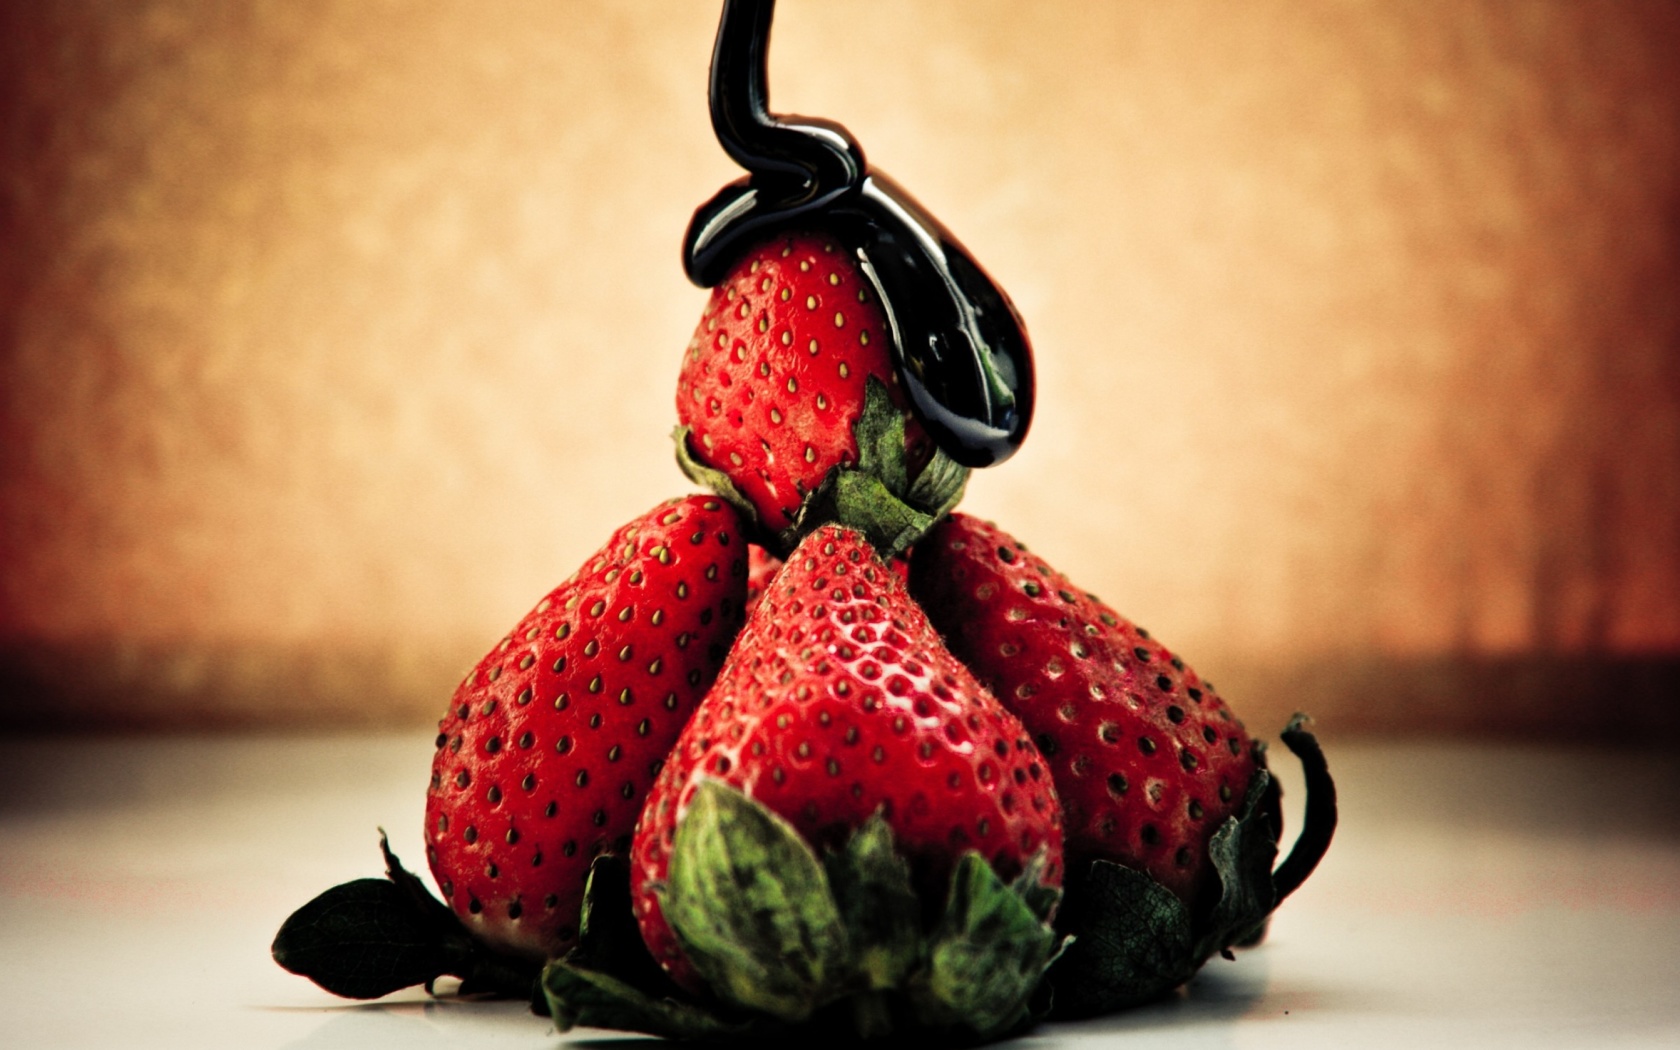 Обои Strawberries with chocolate 1680x1050